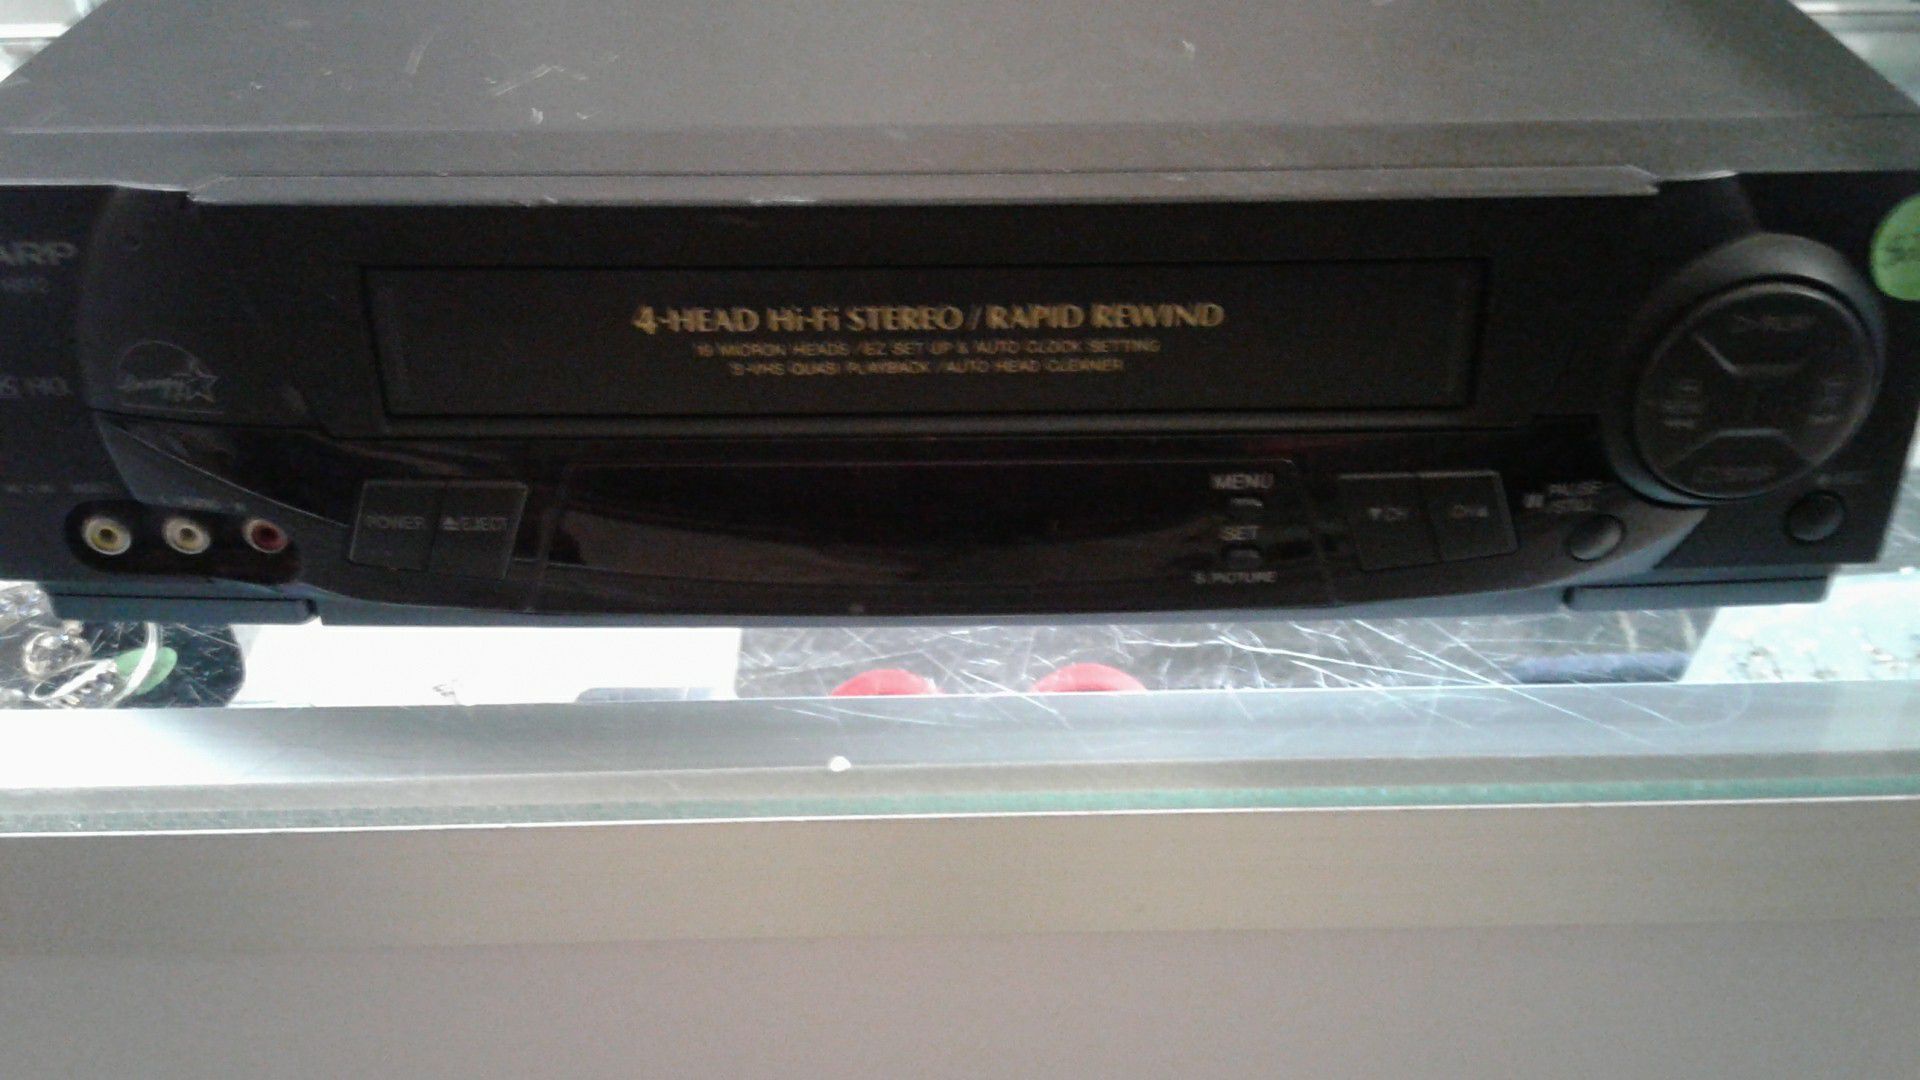 SHARP VC-H812 VCR